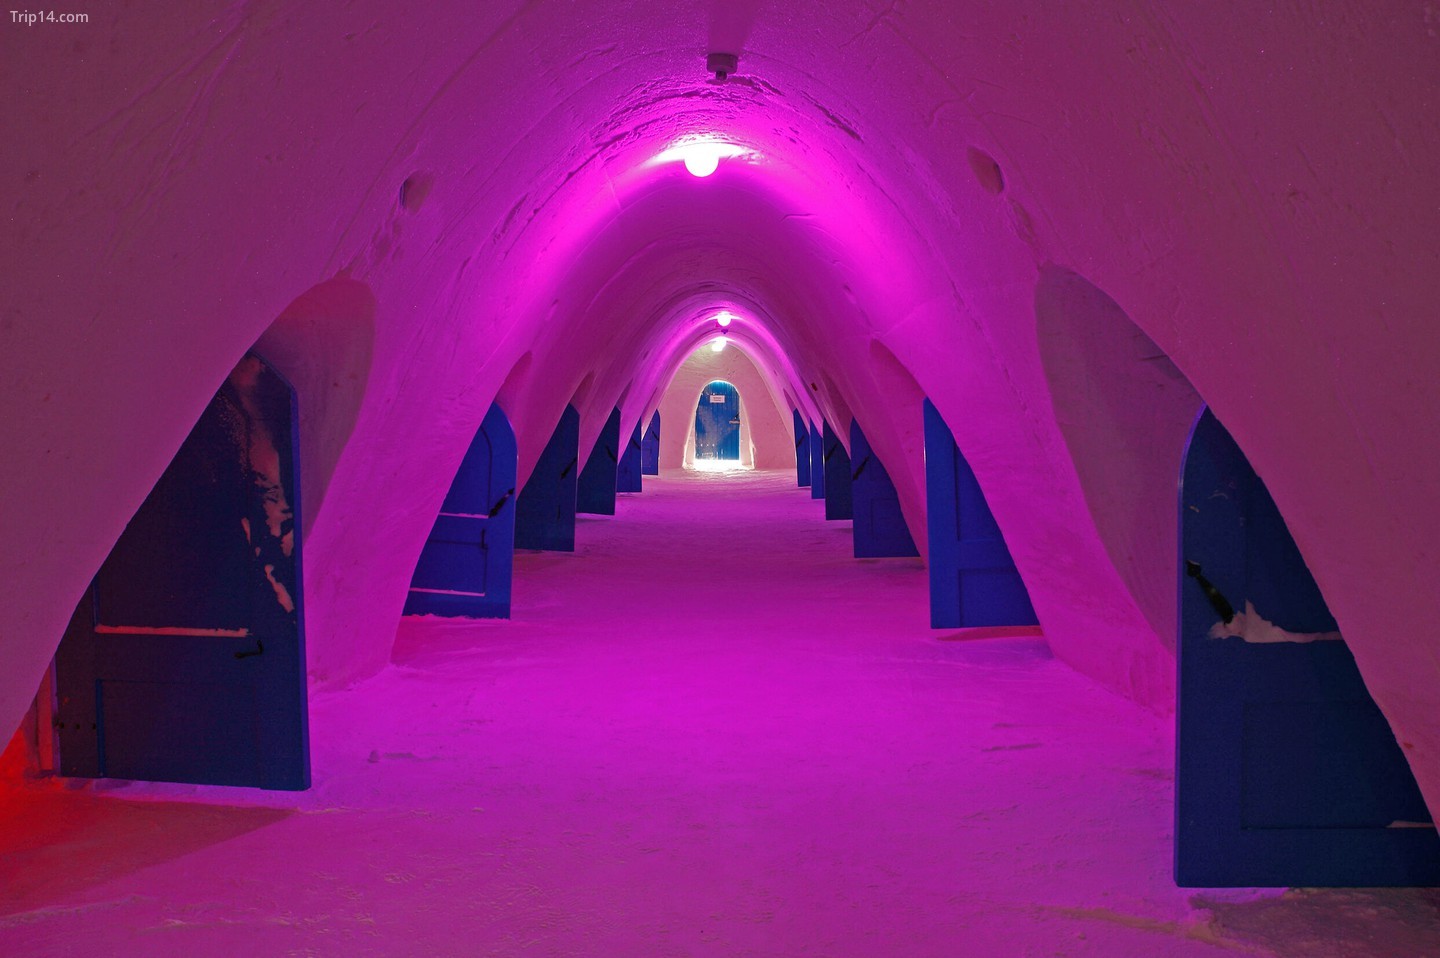 Điểm thu hút lớn nhất ở Kemi là SnowCastle, được xây dựng lại mỗi năm theo một phong cách khác nhau